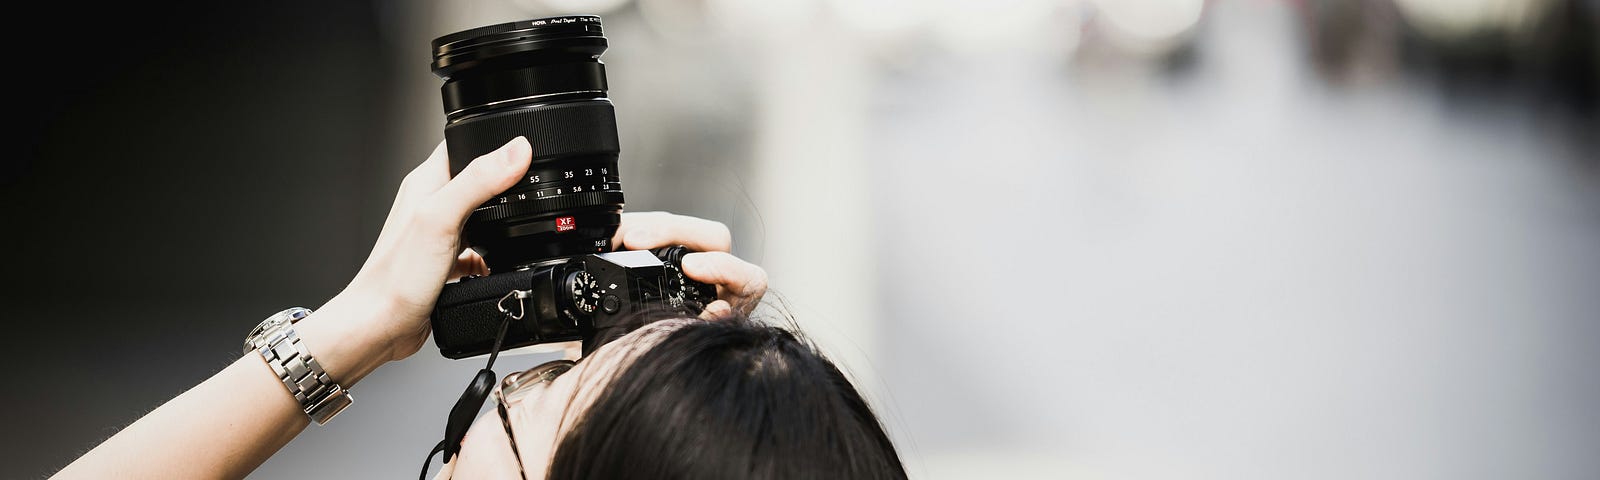 A person focusing a camera lens